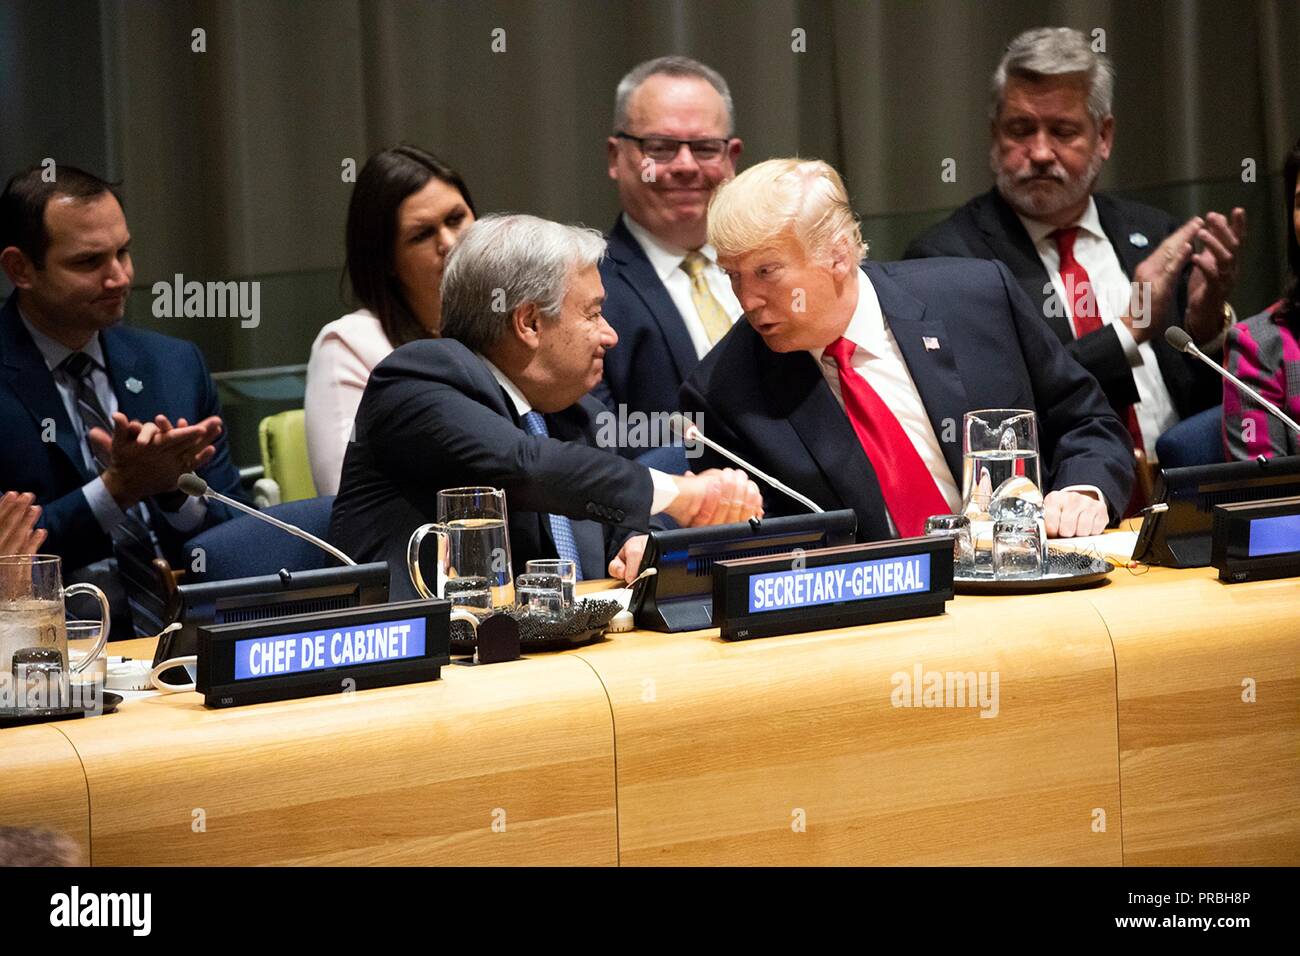 Us-Präsident Donald Trump Austausch Handshakes mit UN-Generalsekretär Antonio Guterres vor Beginn der Weltweiten Aufruf zur Aktion zum Drogenproblem Treffen im Hauptquartier der Vereinten Nationen am 24. September 2018 in New York, New York. Stockfoto